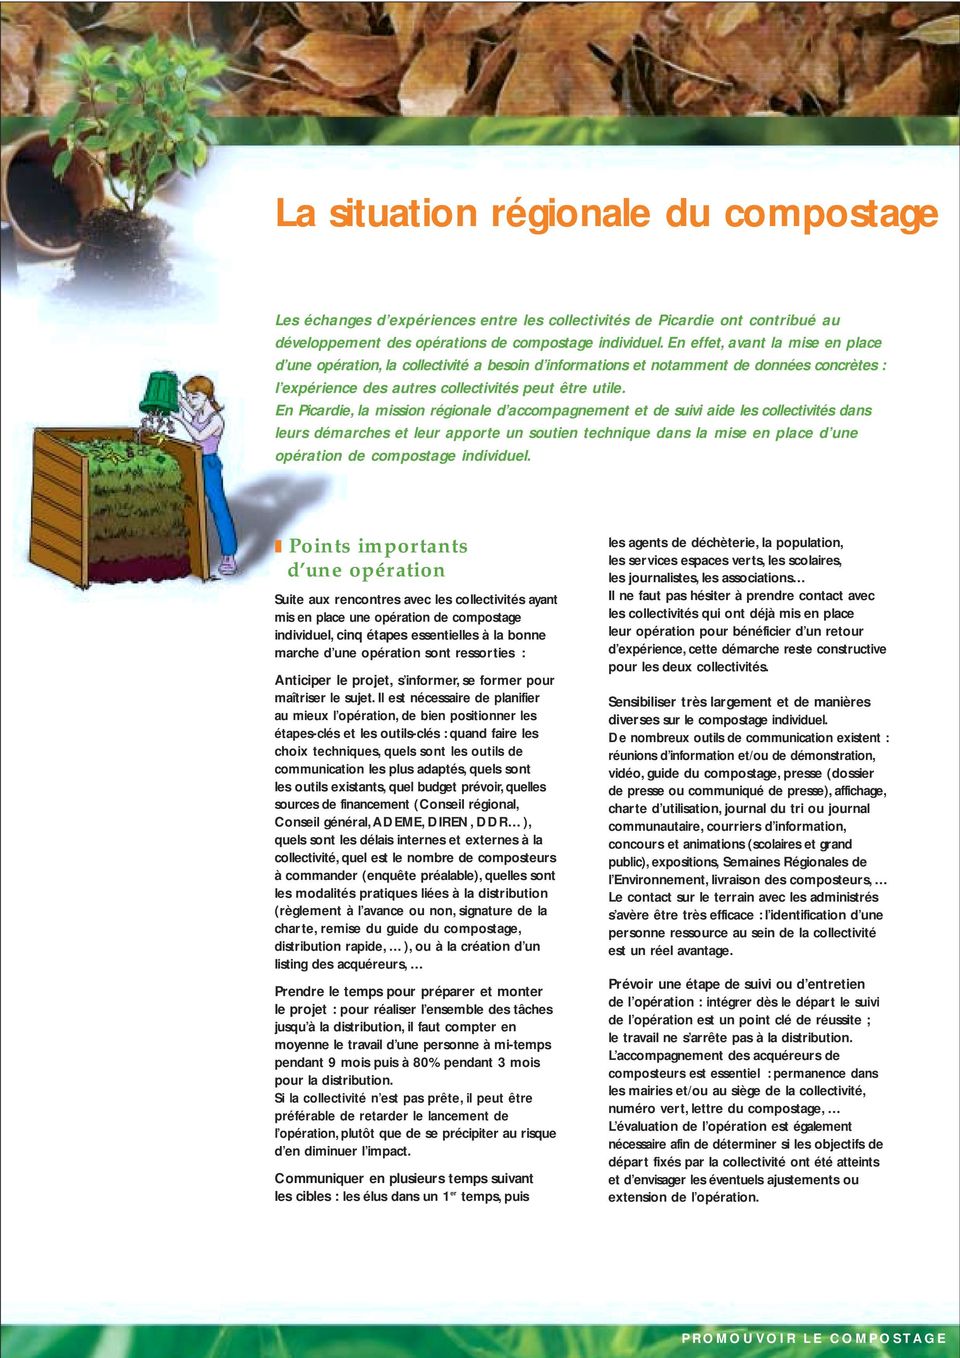 En Picardie, la mission régionale d accompagnement et de suivi aide les collectivités dans leurs démarches et leur apporte un soutien technique dans la mise en place d une opération de compostage